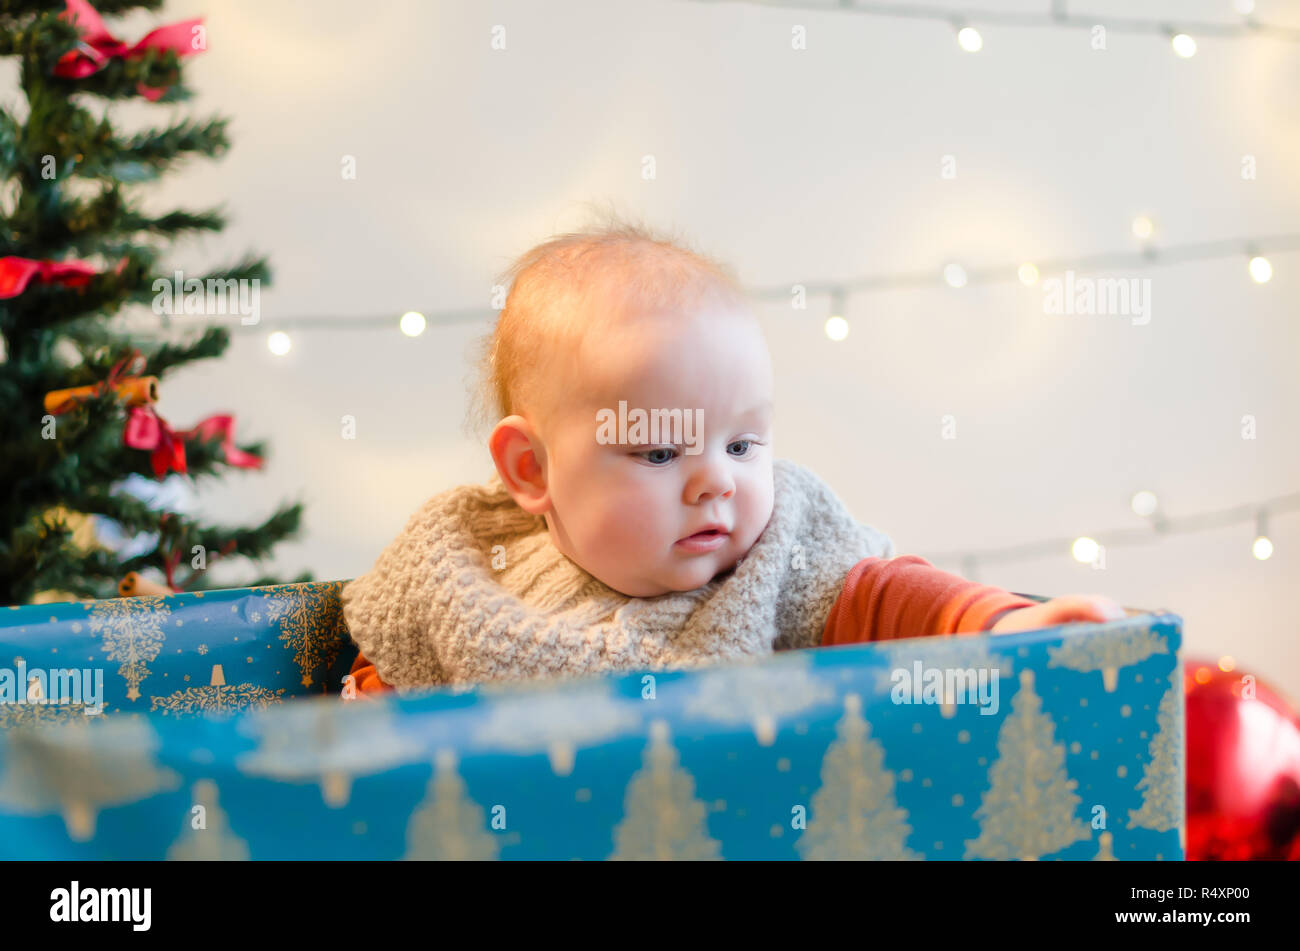 Happy Christmas baby boy in einem derzeitigen Kasten um Weihnachtsbaum und Dekorationen Stockfoto